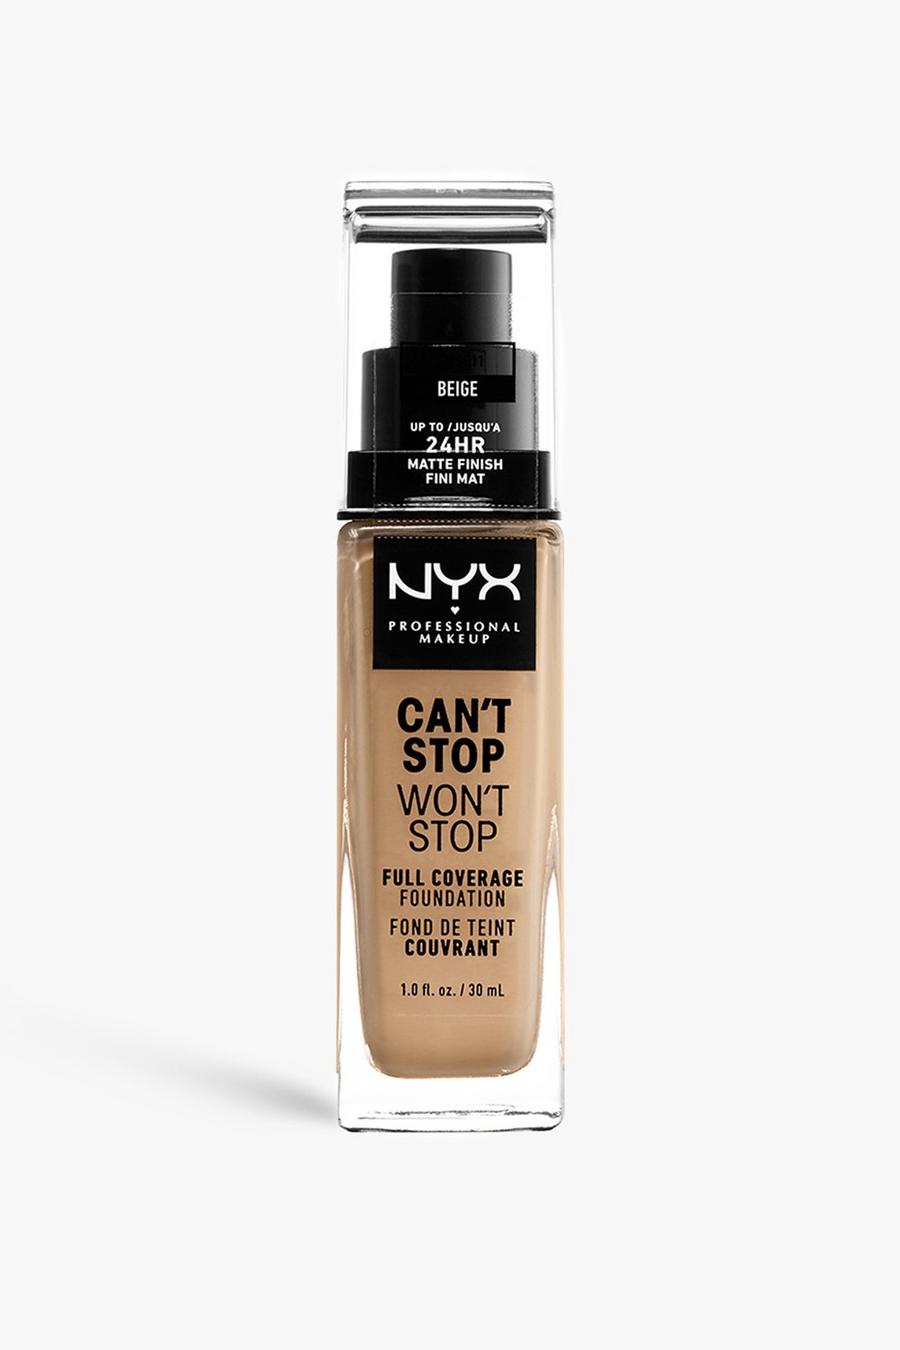 NYX Professional Makeup - Fond de teint couvrant - Can't Stop Won't Stop, Beige